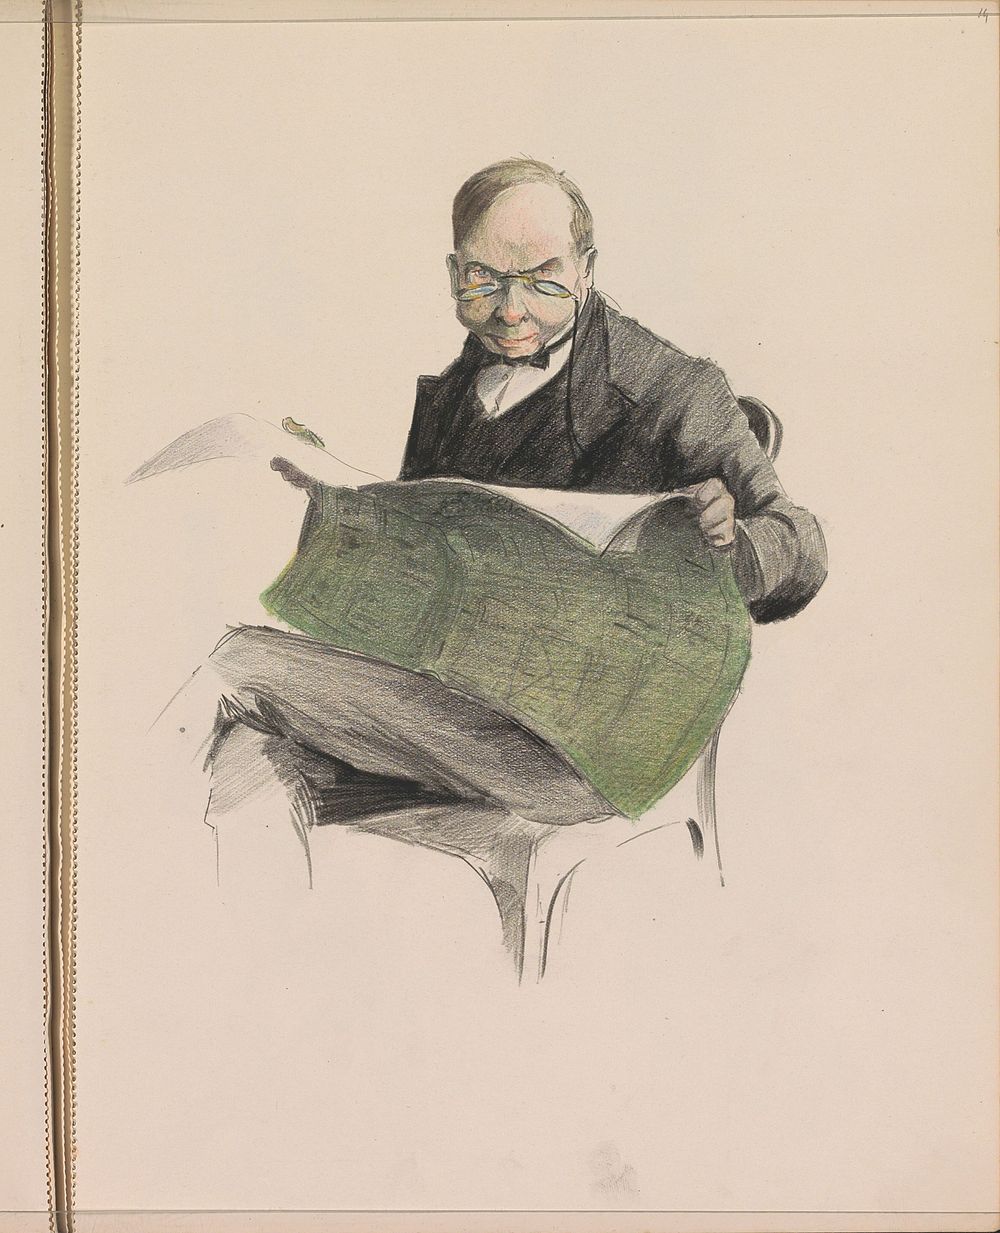 Man die de krant leest op een stoel (c. 1917 - c. 1919) by Otto Verhagen I